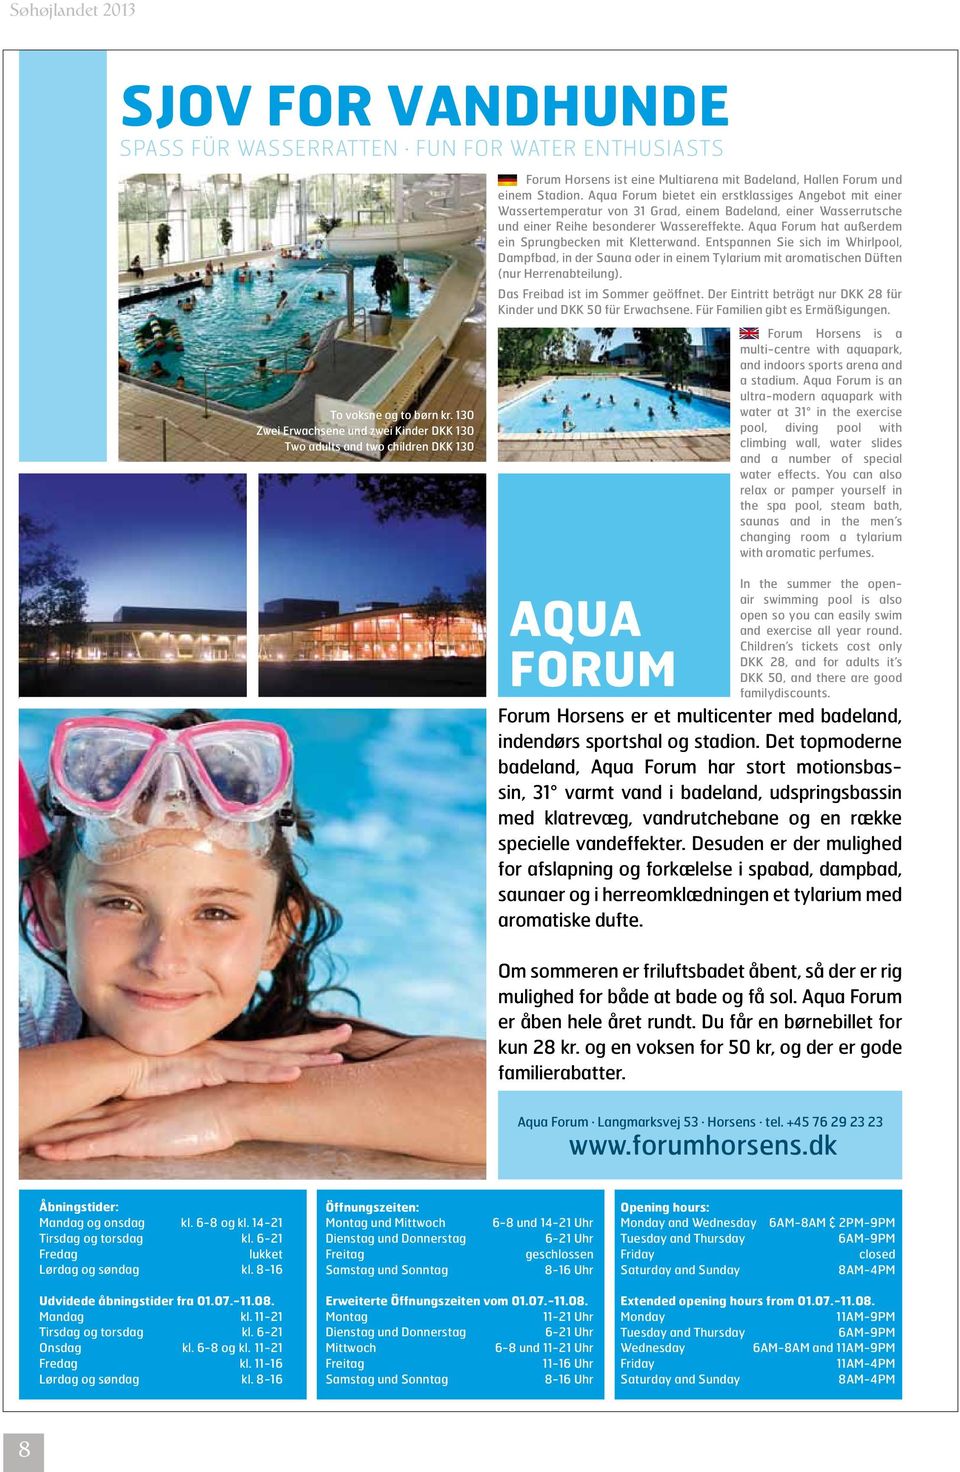 Aqua Forum bietet ein erstklassiges Angebot mit einer Wassertemperatur von 31 Grad, einem Badeland, einer Wasserrutsche und einer Reihe besonderer Wassereffekte.